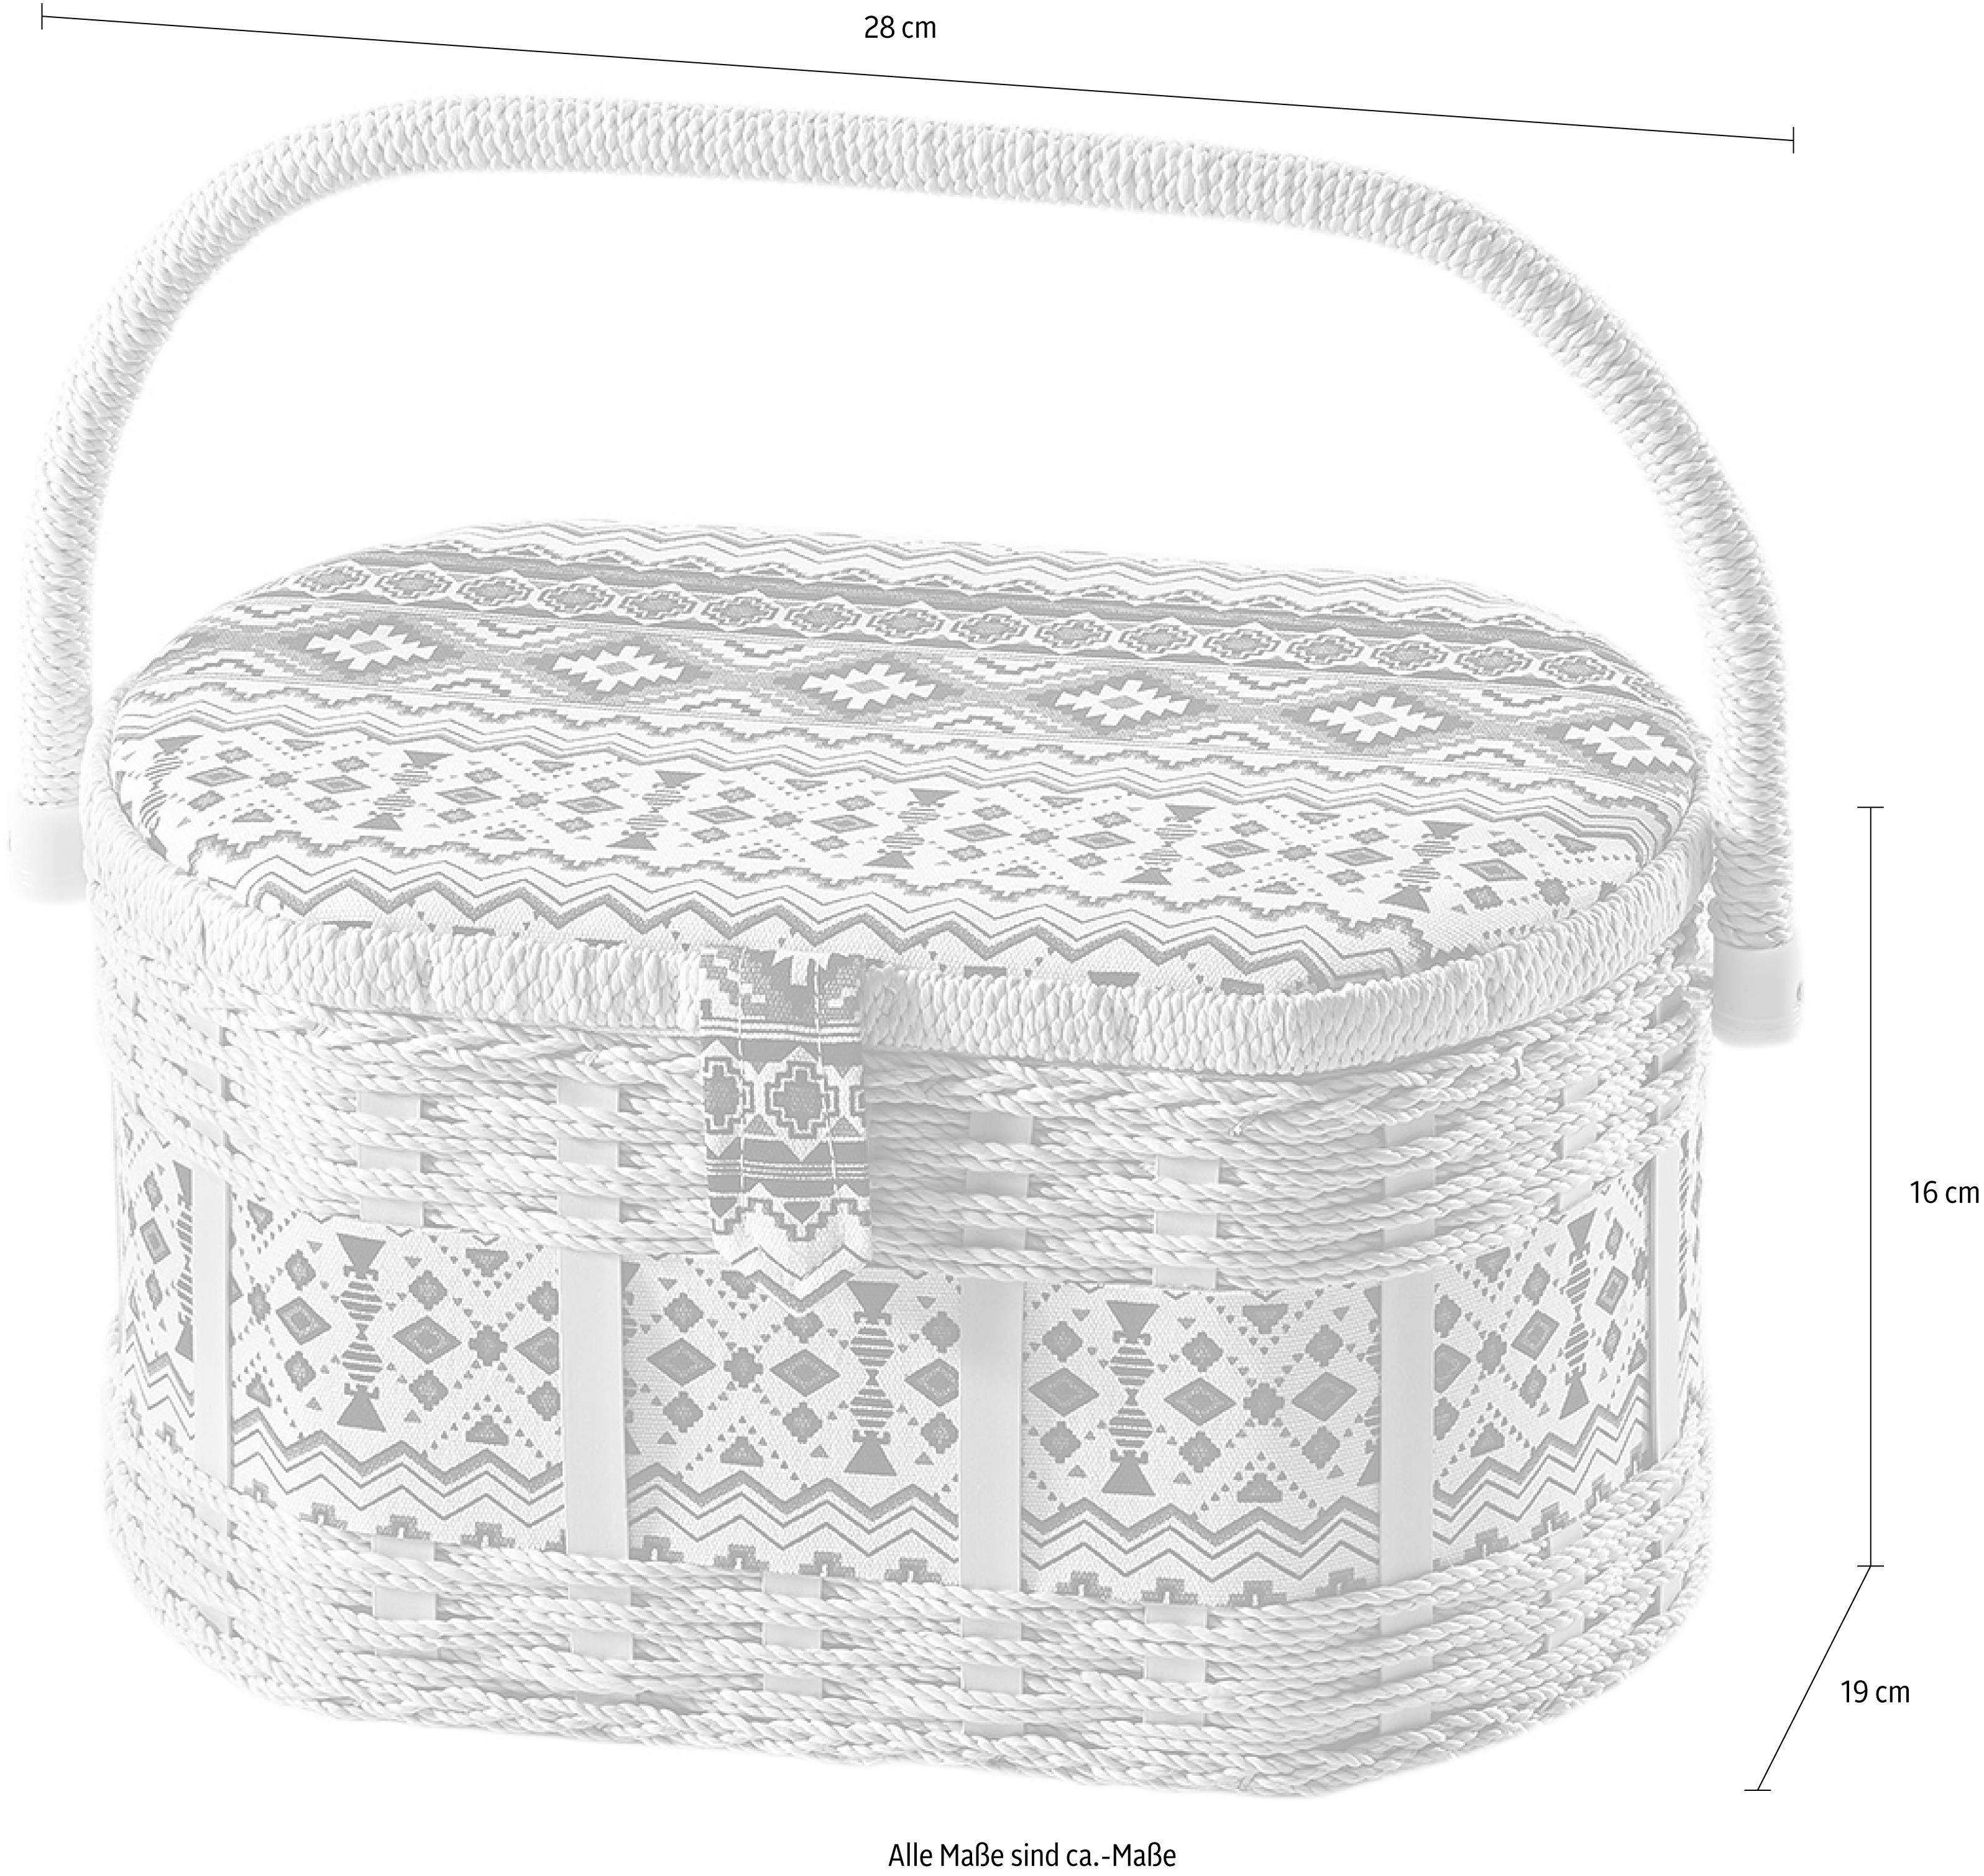 Textil Kunststoff und Muster Nähkästchen, oval, aus weißem schwarz mit locker